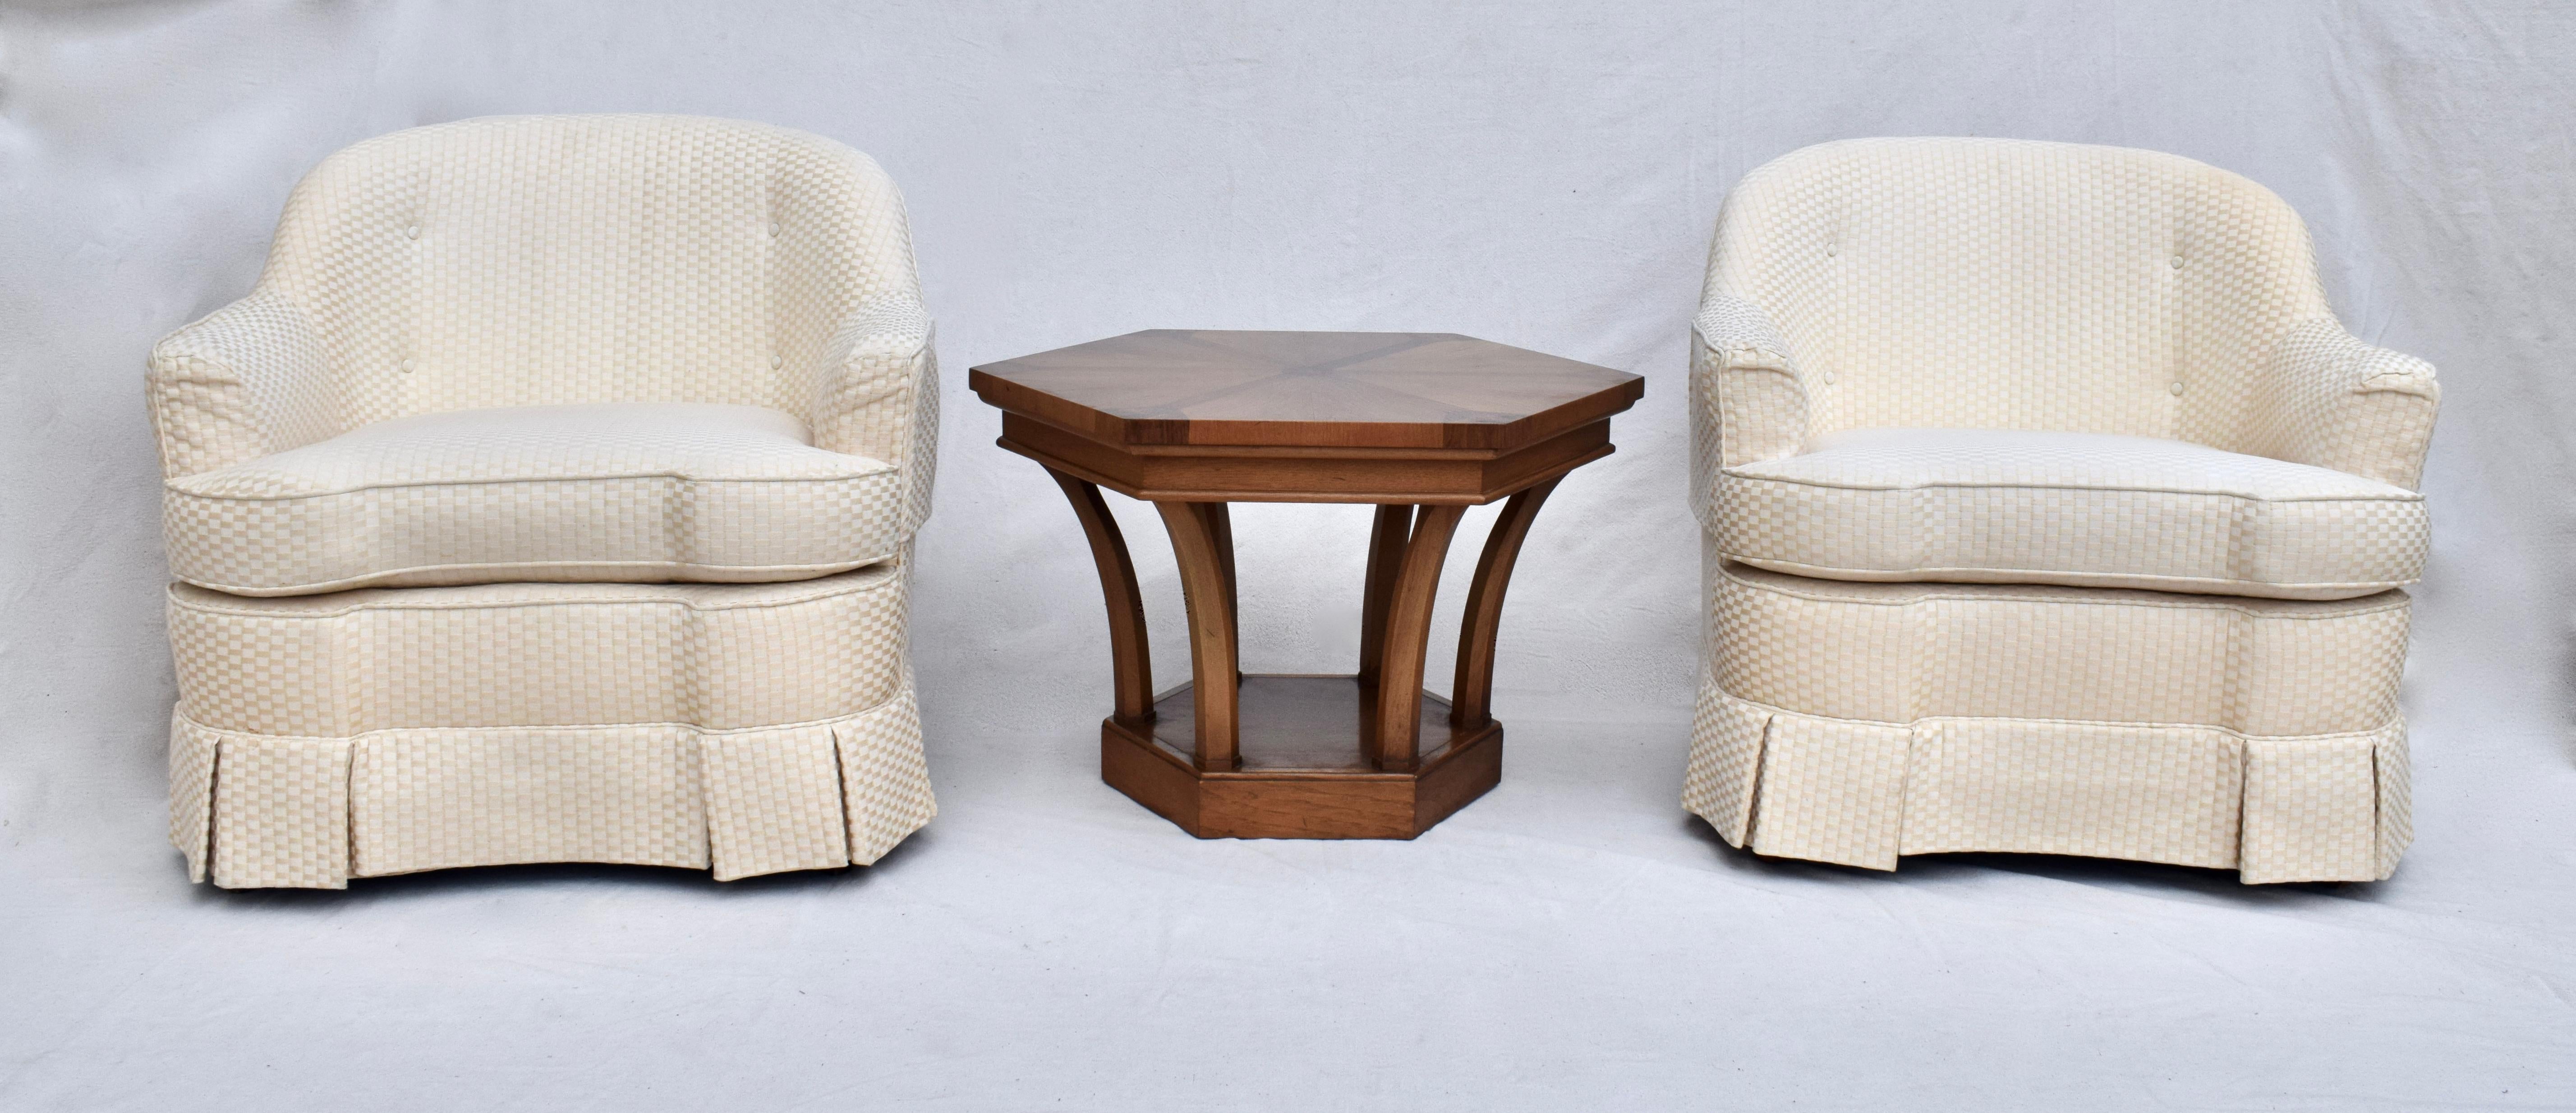 Table d'appoint ou de bout des années 1960, fabriquée par Tomlinson Furniture, en bois de pécan et d'acajou incrusté, de forme hexagonale. Un design inhabituel qui convient à une variété d'utilisations.